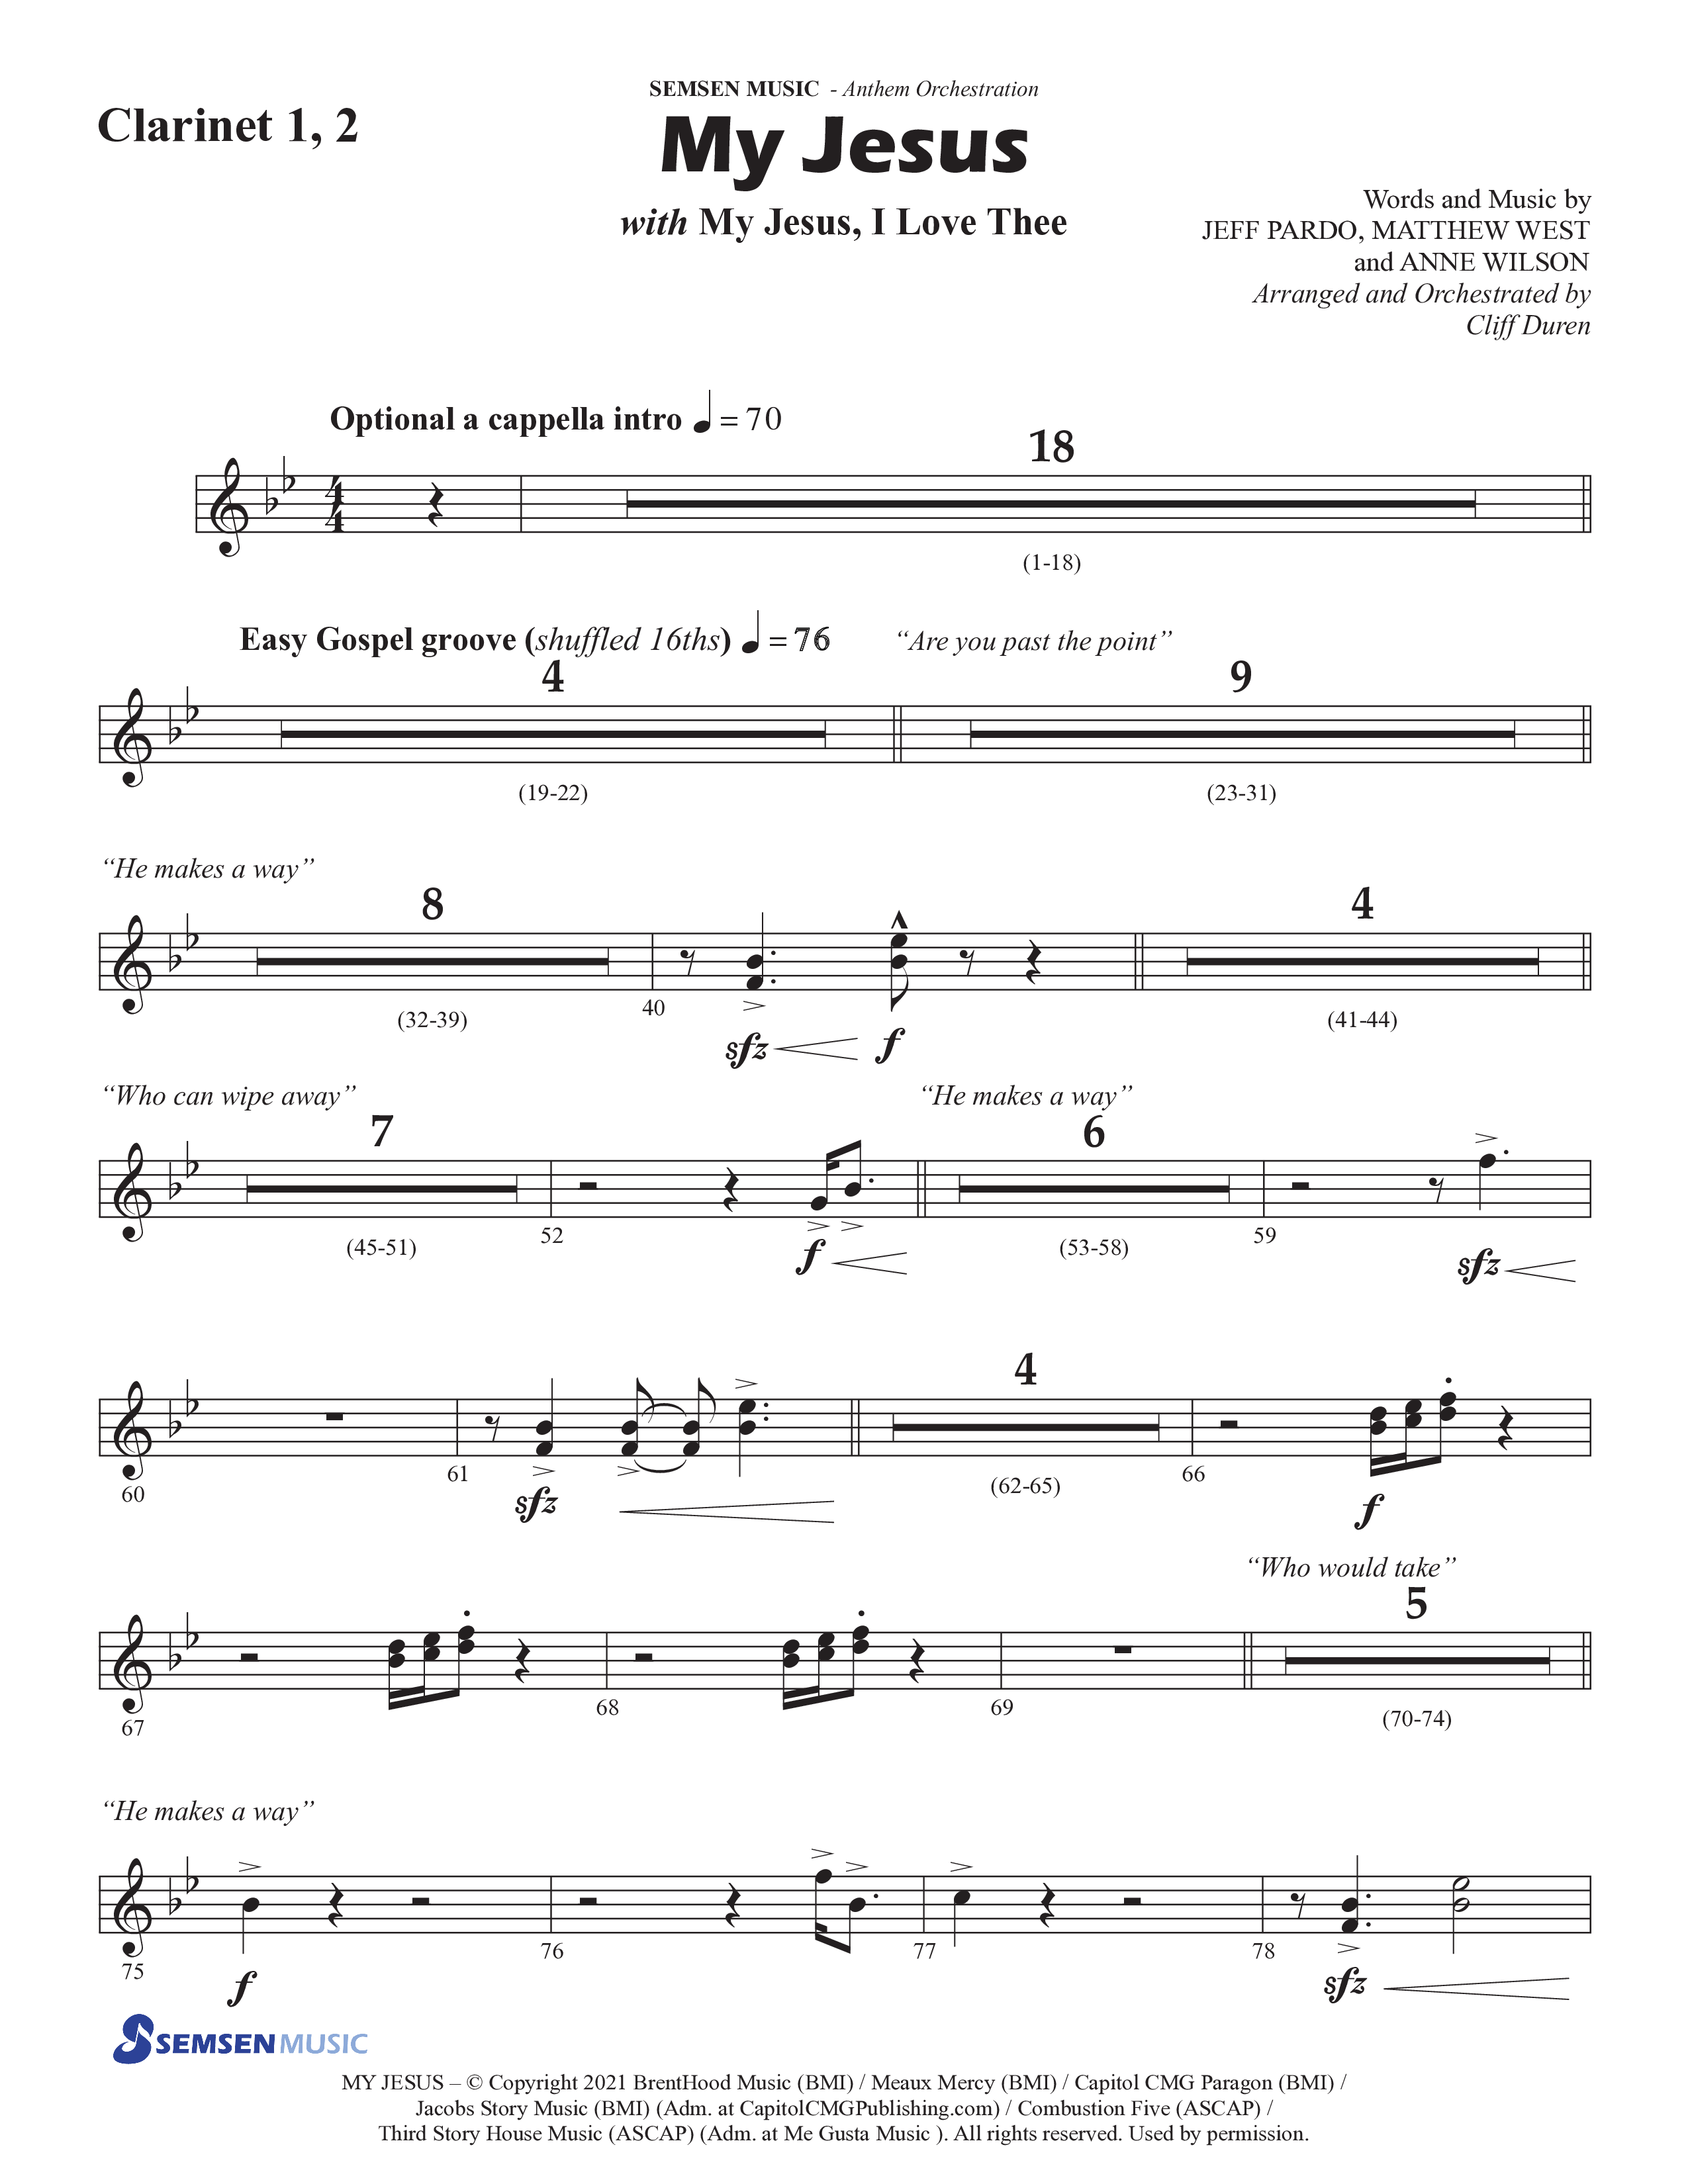 My Jesus (with My Jesus I Love Thee) (Choral Anthem SATB) Clarinet 1/2 (Semsen Music / Arr. Cliff Duren)